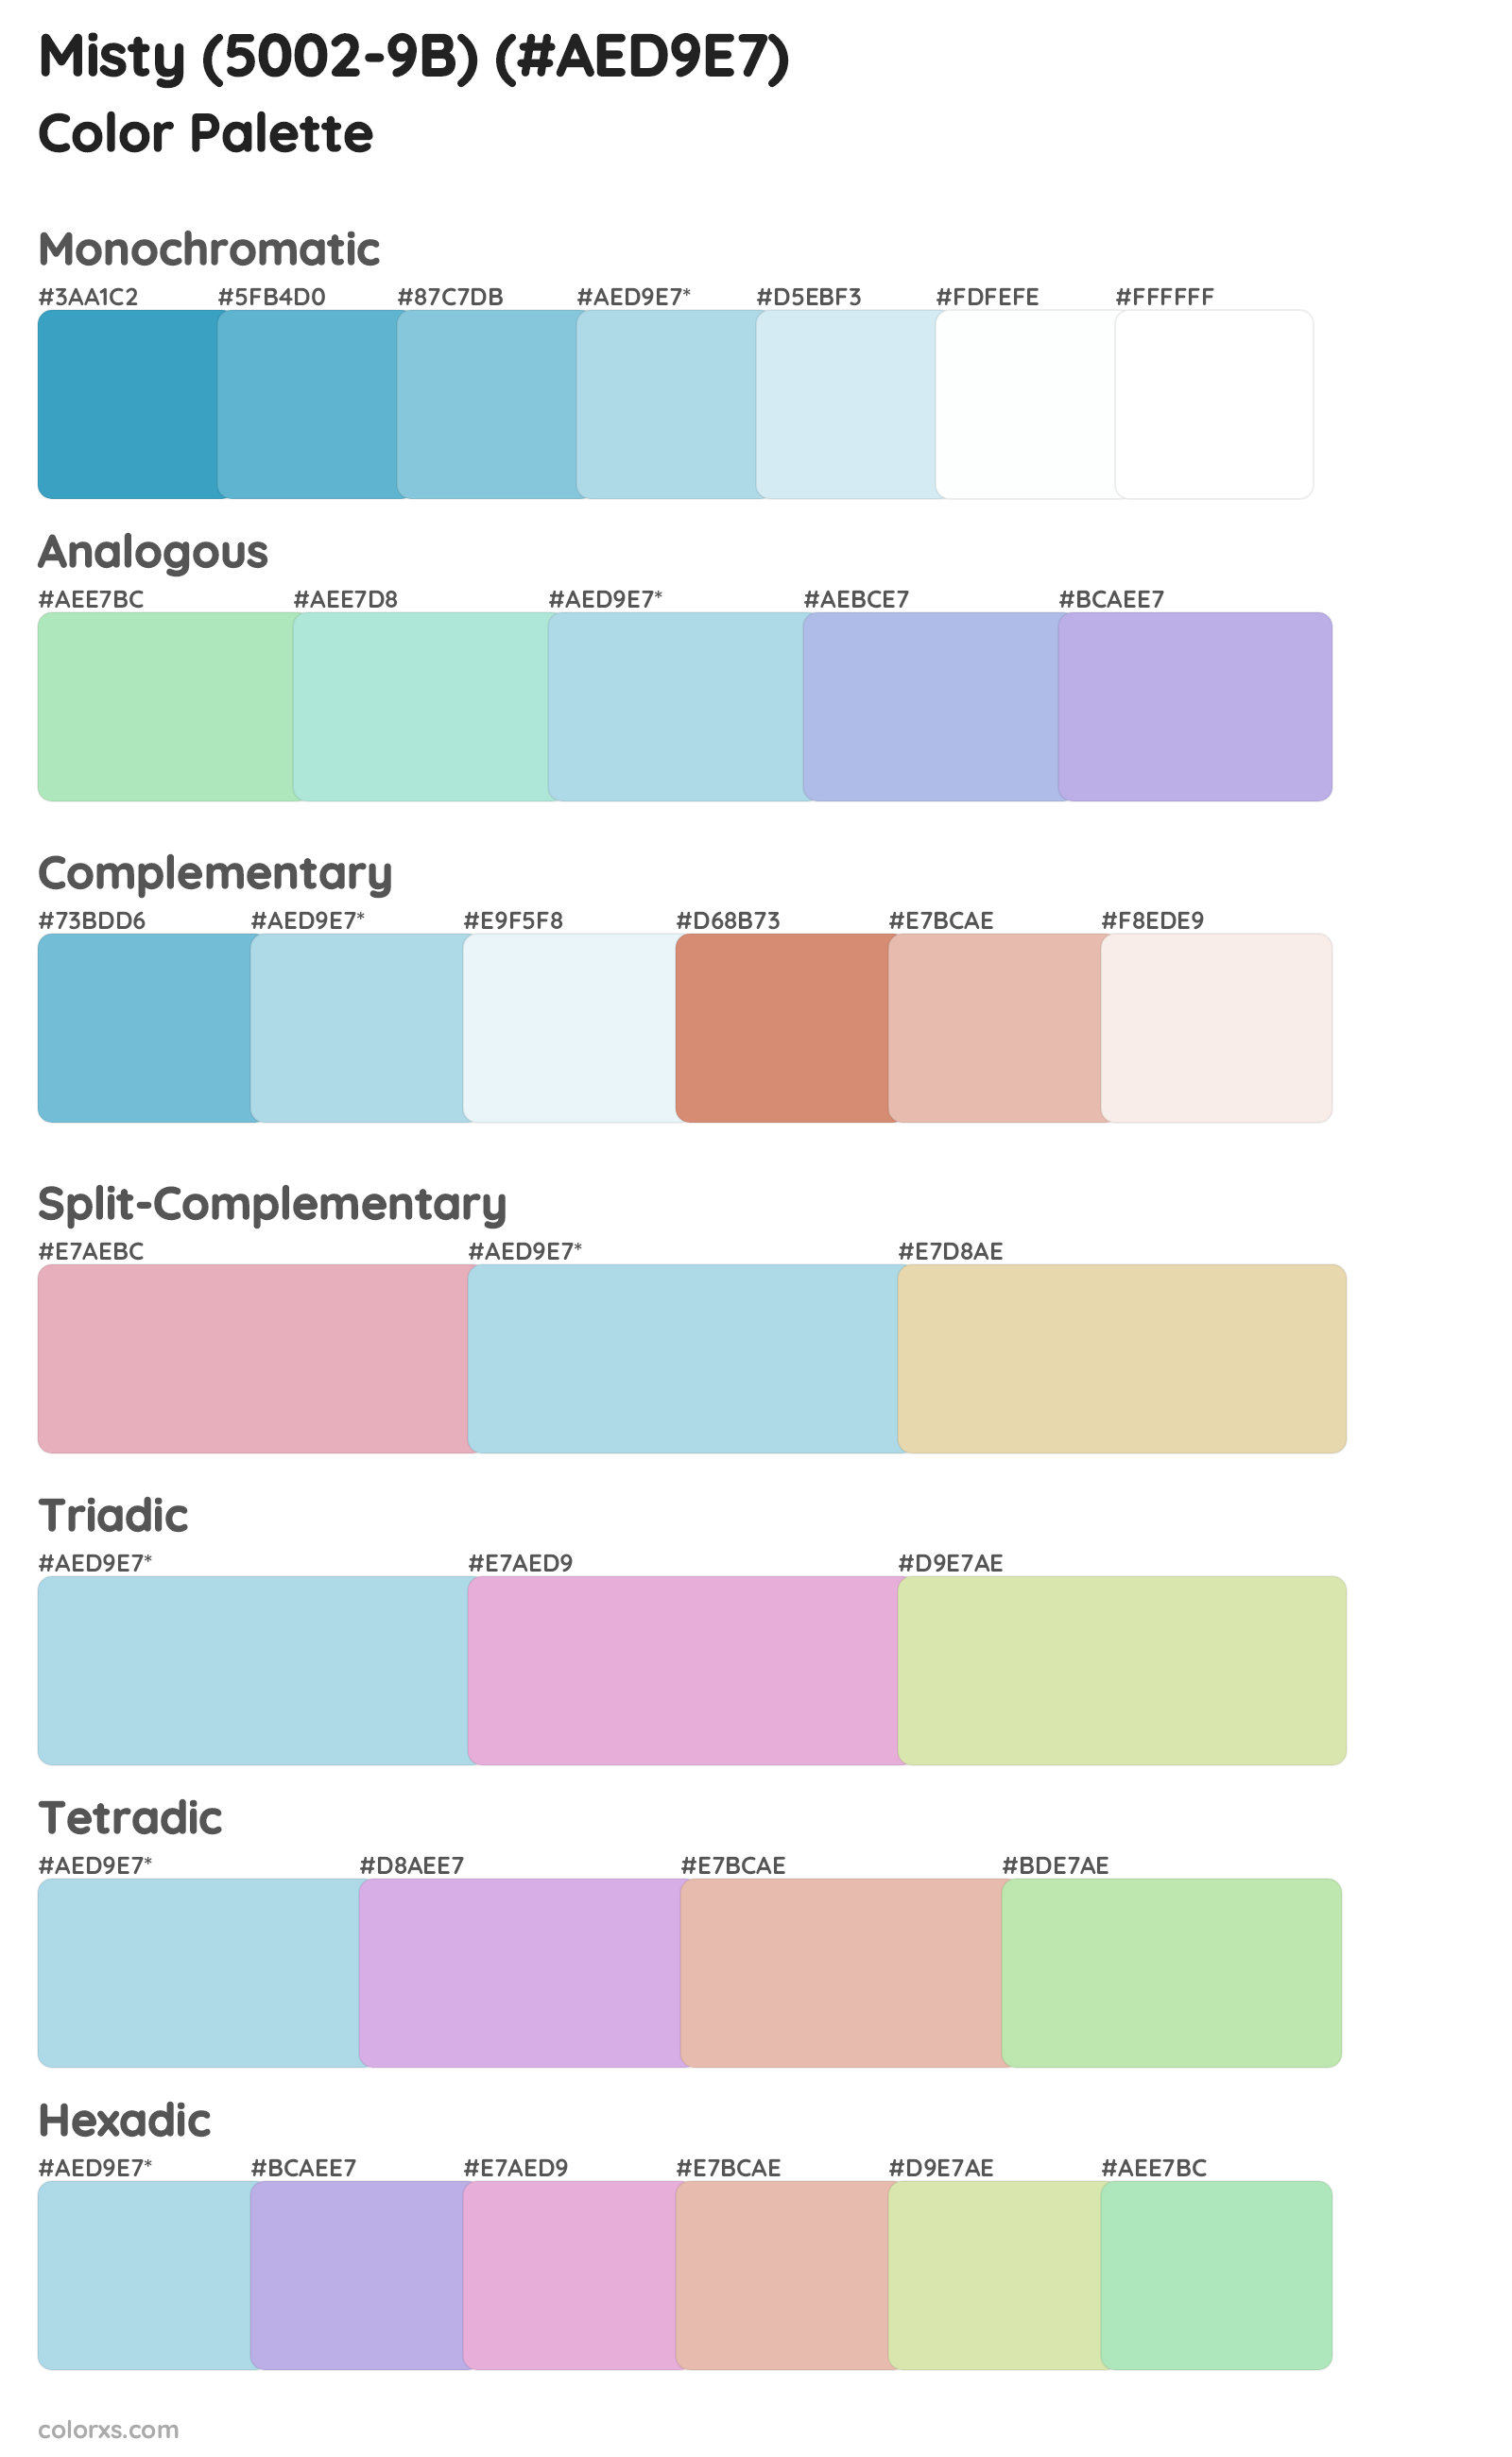 Misty (5002-9B) Color Scheme Palettes